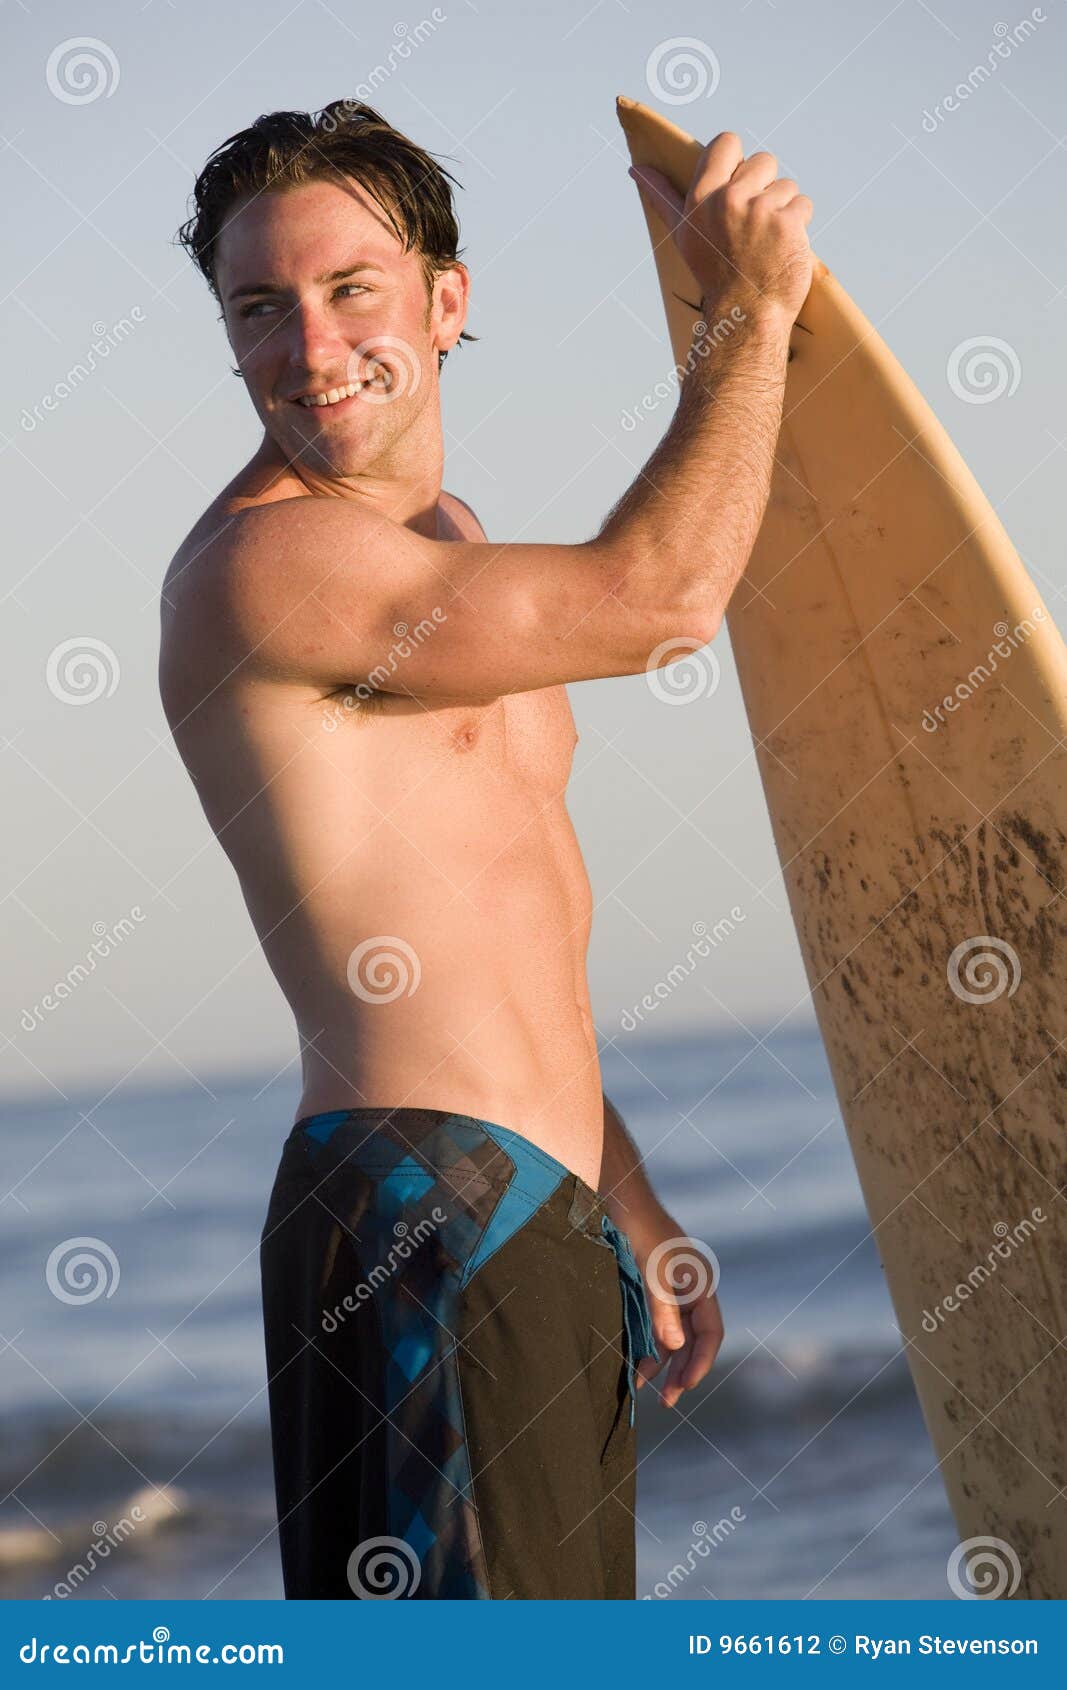 Surfer stock photo. Image of body, boardshorts, athletic - 9661612